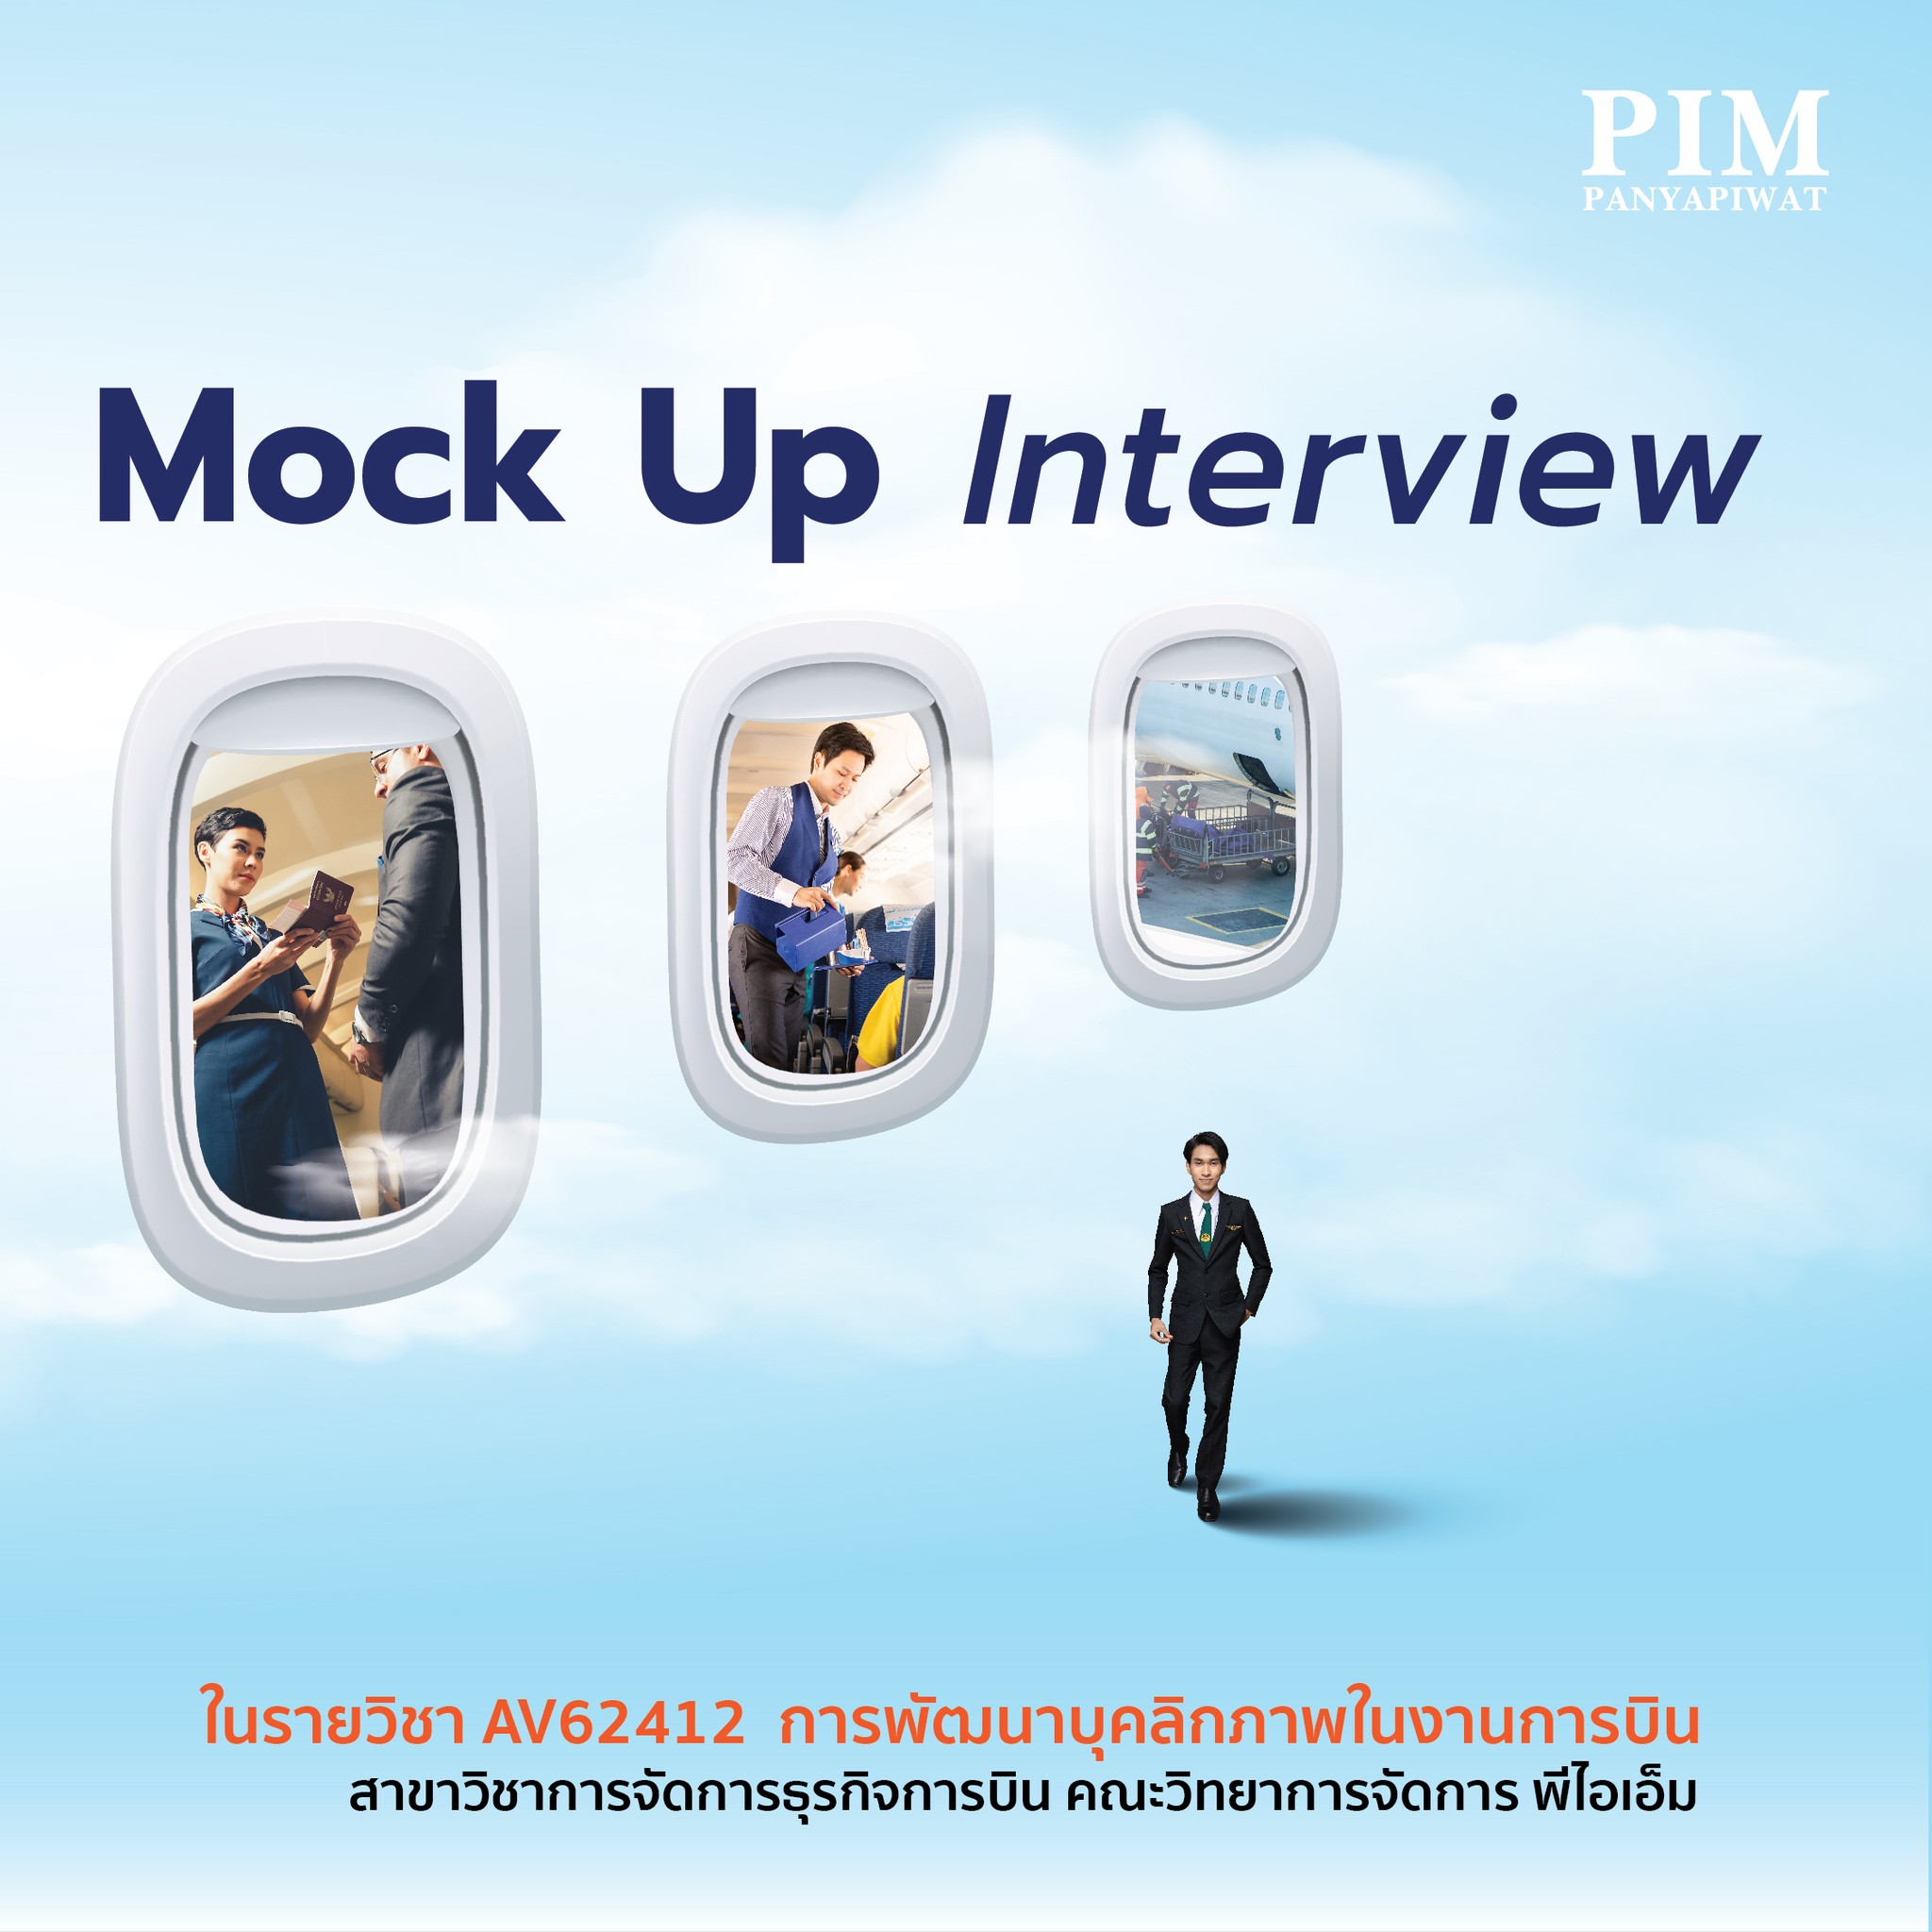 เตรียมความพร้อม เติมความมั่นใจ ในกิจกรรม Mock Up Interview สาขาวิชาการจัดการธุรกิจการบิน คณะวิทยาการจัดการ พีไอเอ็ม